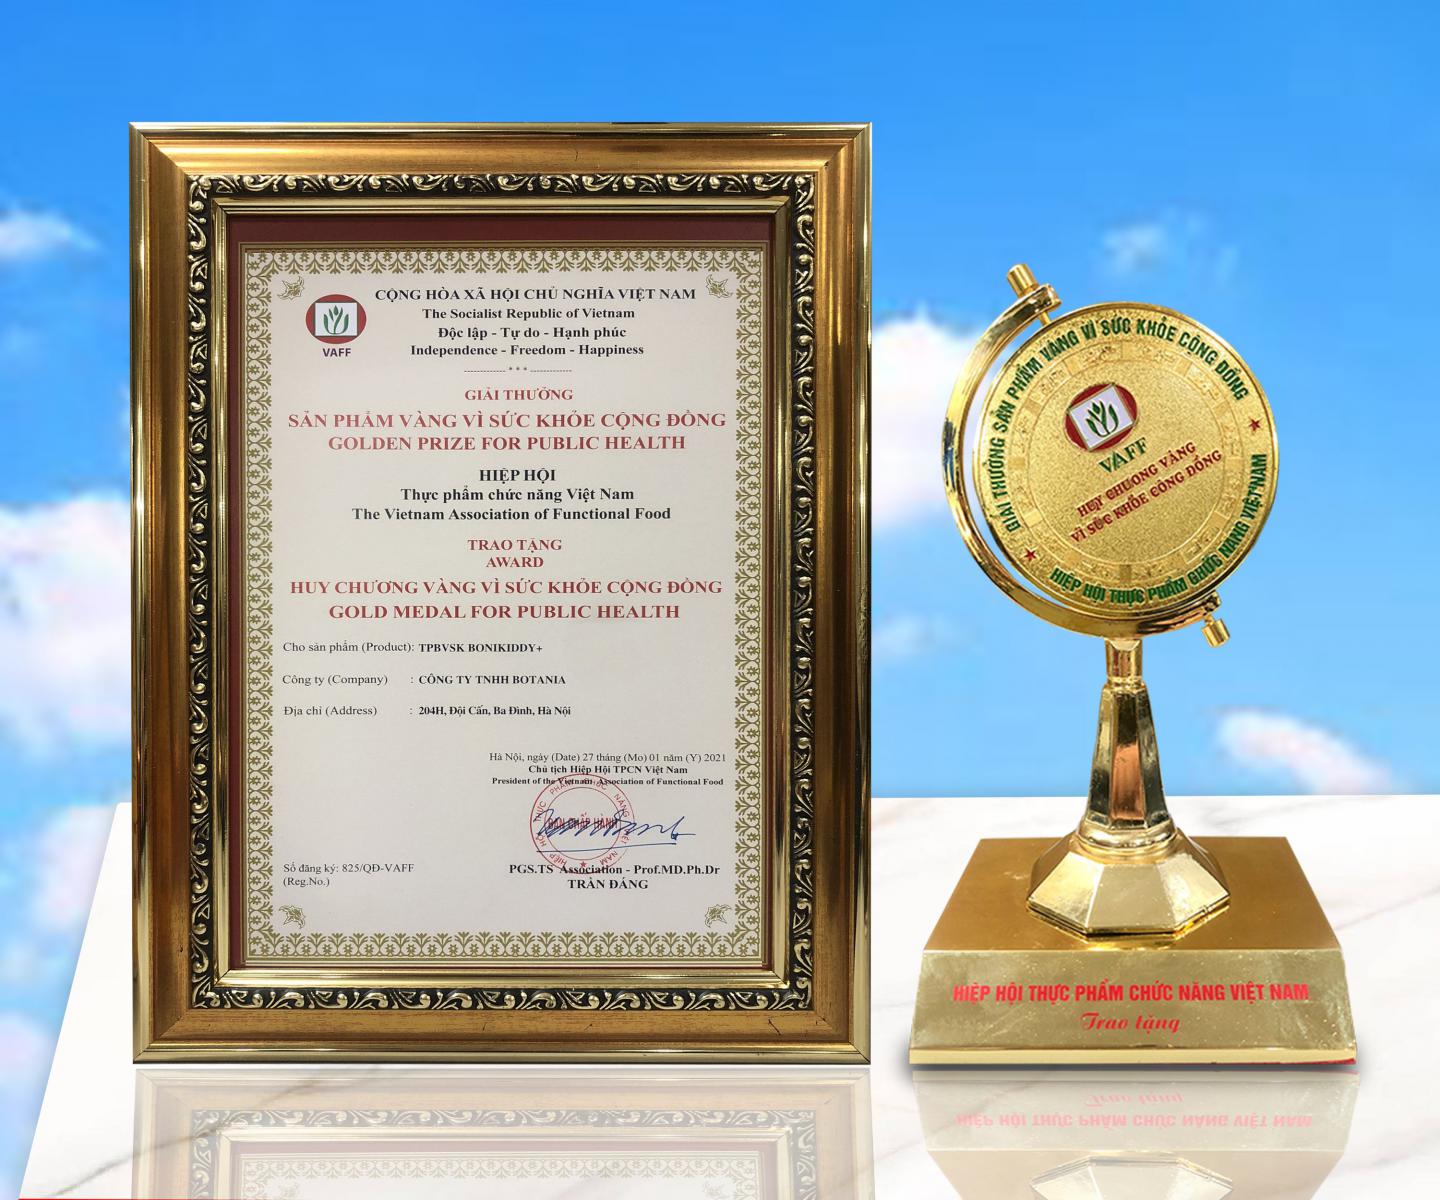 VAFF trao giải thưởng “Sản phẩm vàng vì sức khỏe cộng đồng” lần thứ 3 cho sản phẩm BoniKiddy